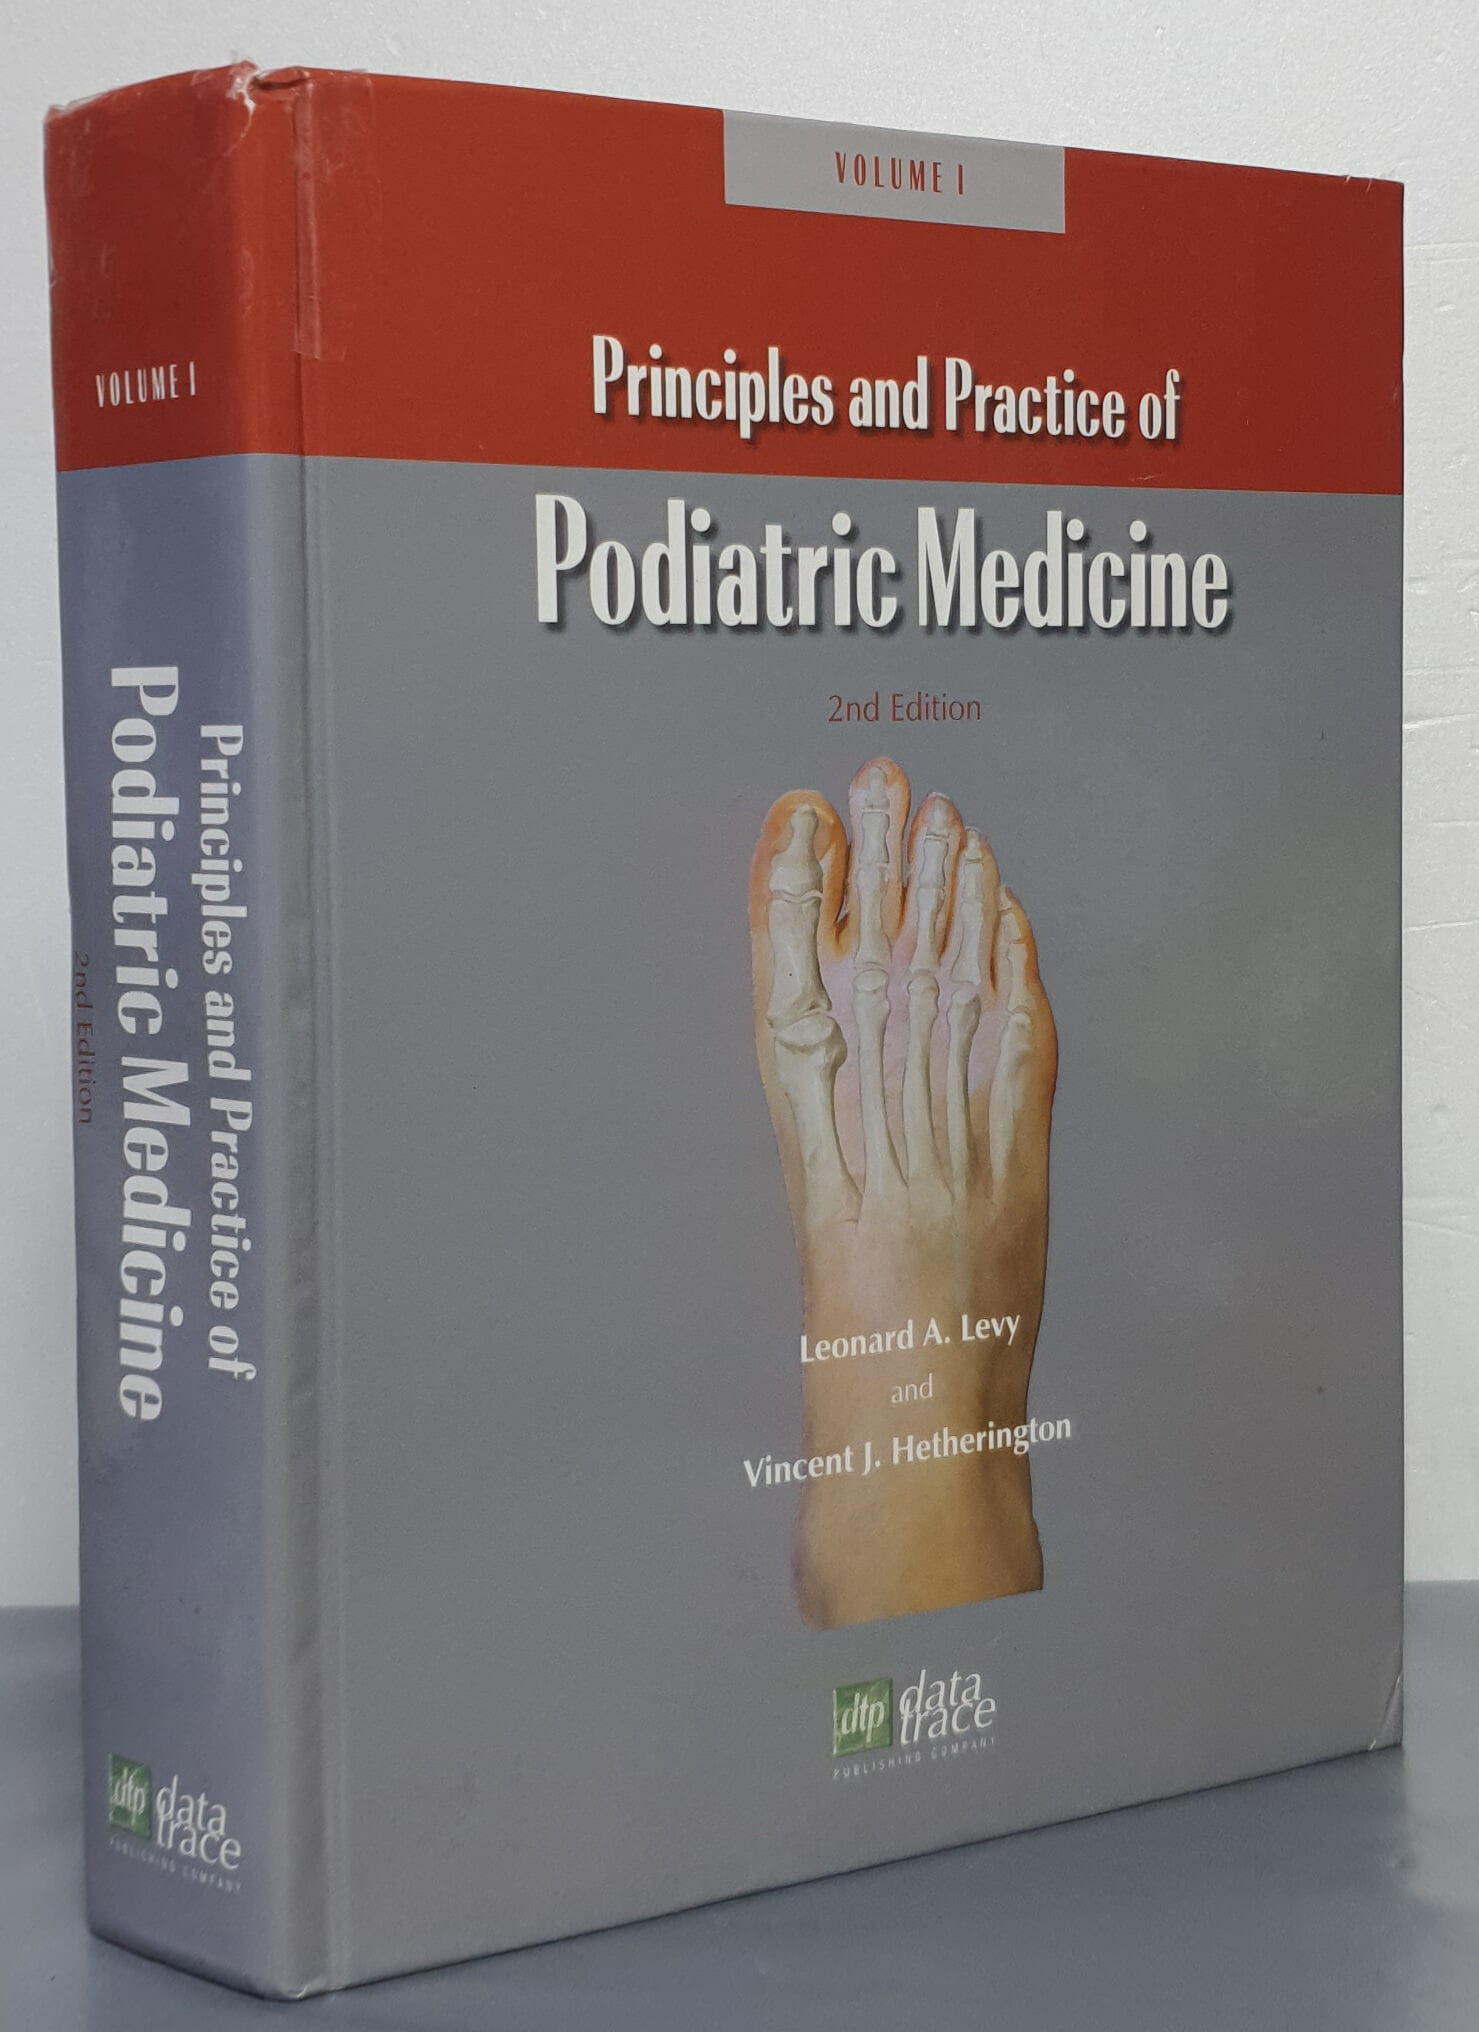 Principles and Practice of Podiatric Medicine (Hardcover, 2 Rev ed)